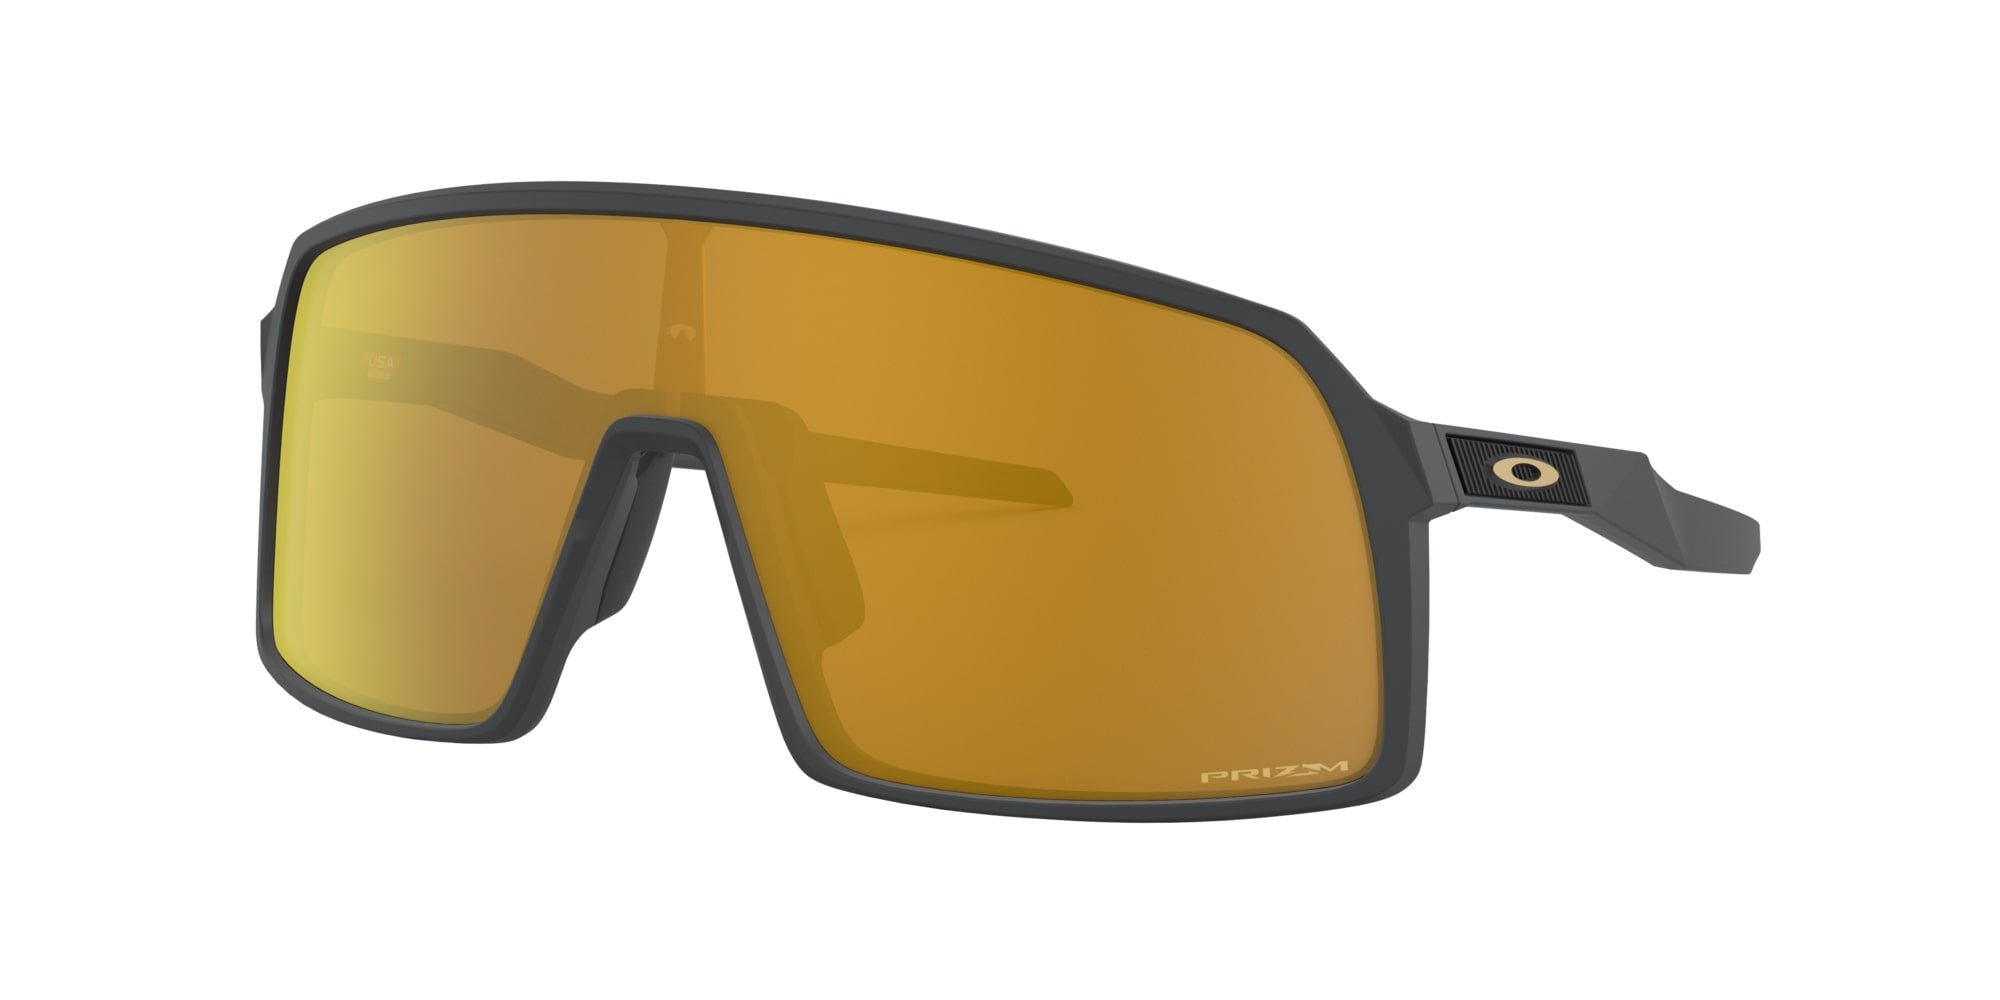 Das Bild zeigt die Sonnenbrille OO9406 05 von der Marke Oakley in carbon mit gelben Gläsern..